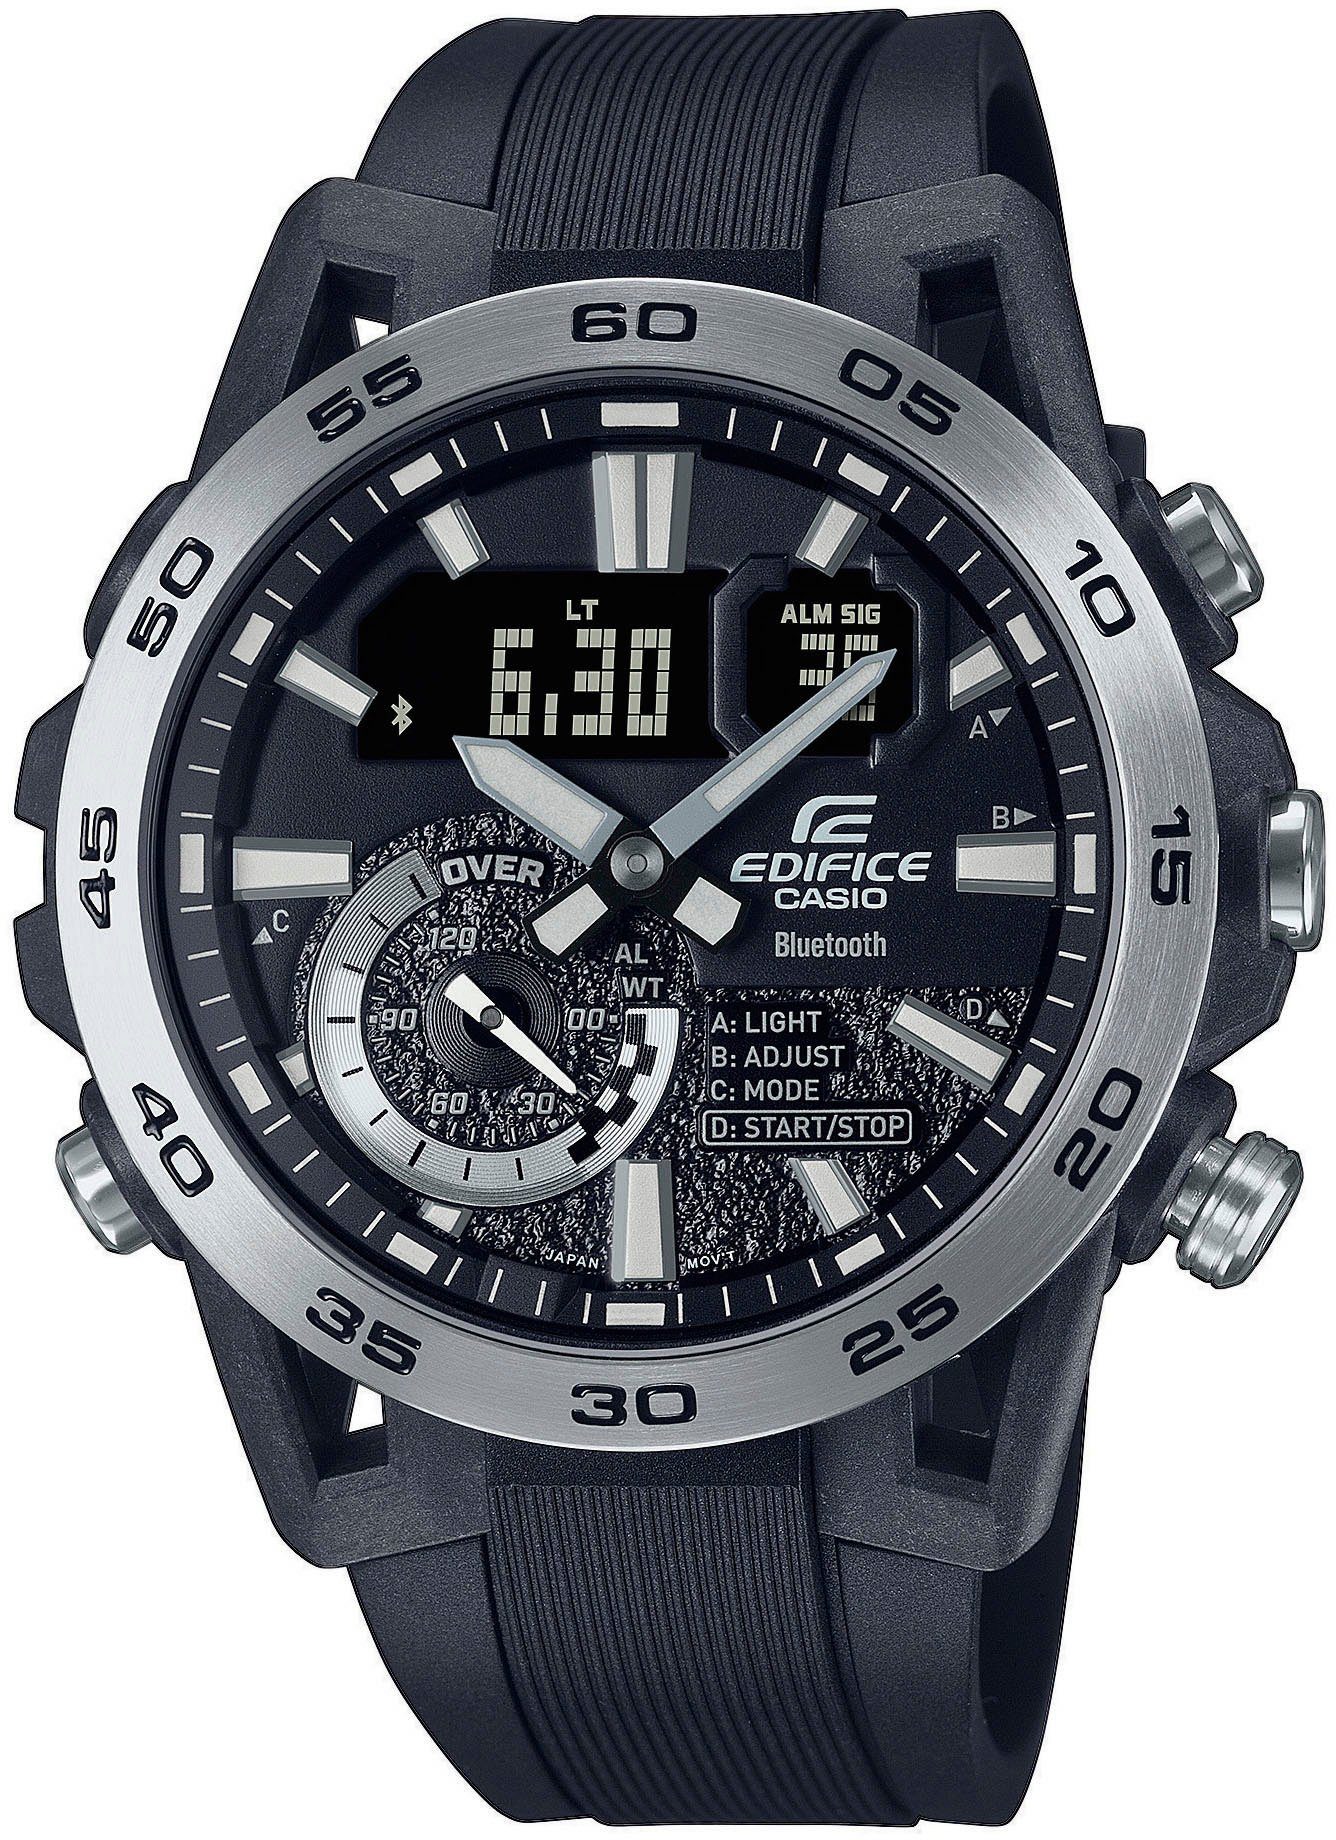 CASIO EDIFICE ECB-40P-1AEF Smartwatch, Armbanduhr, Herrenuhr, Bluetooth, Stoppfunktion, Weltzeit, digital